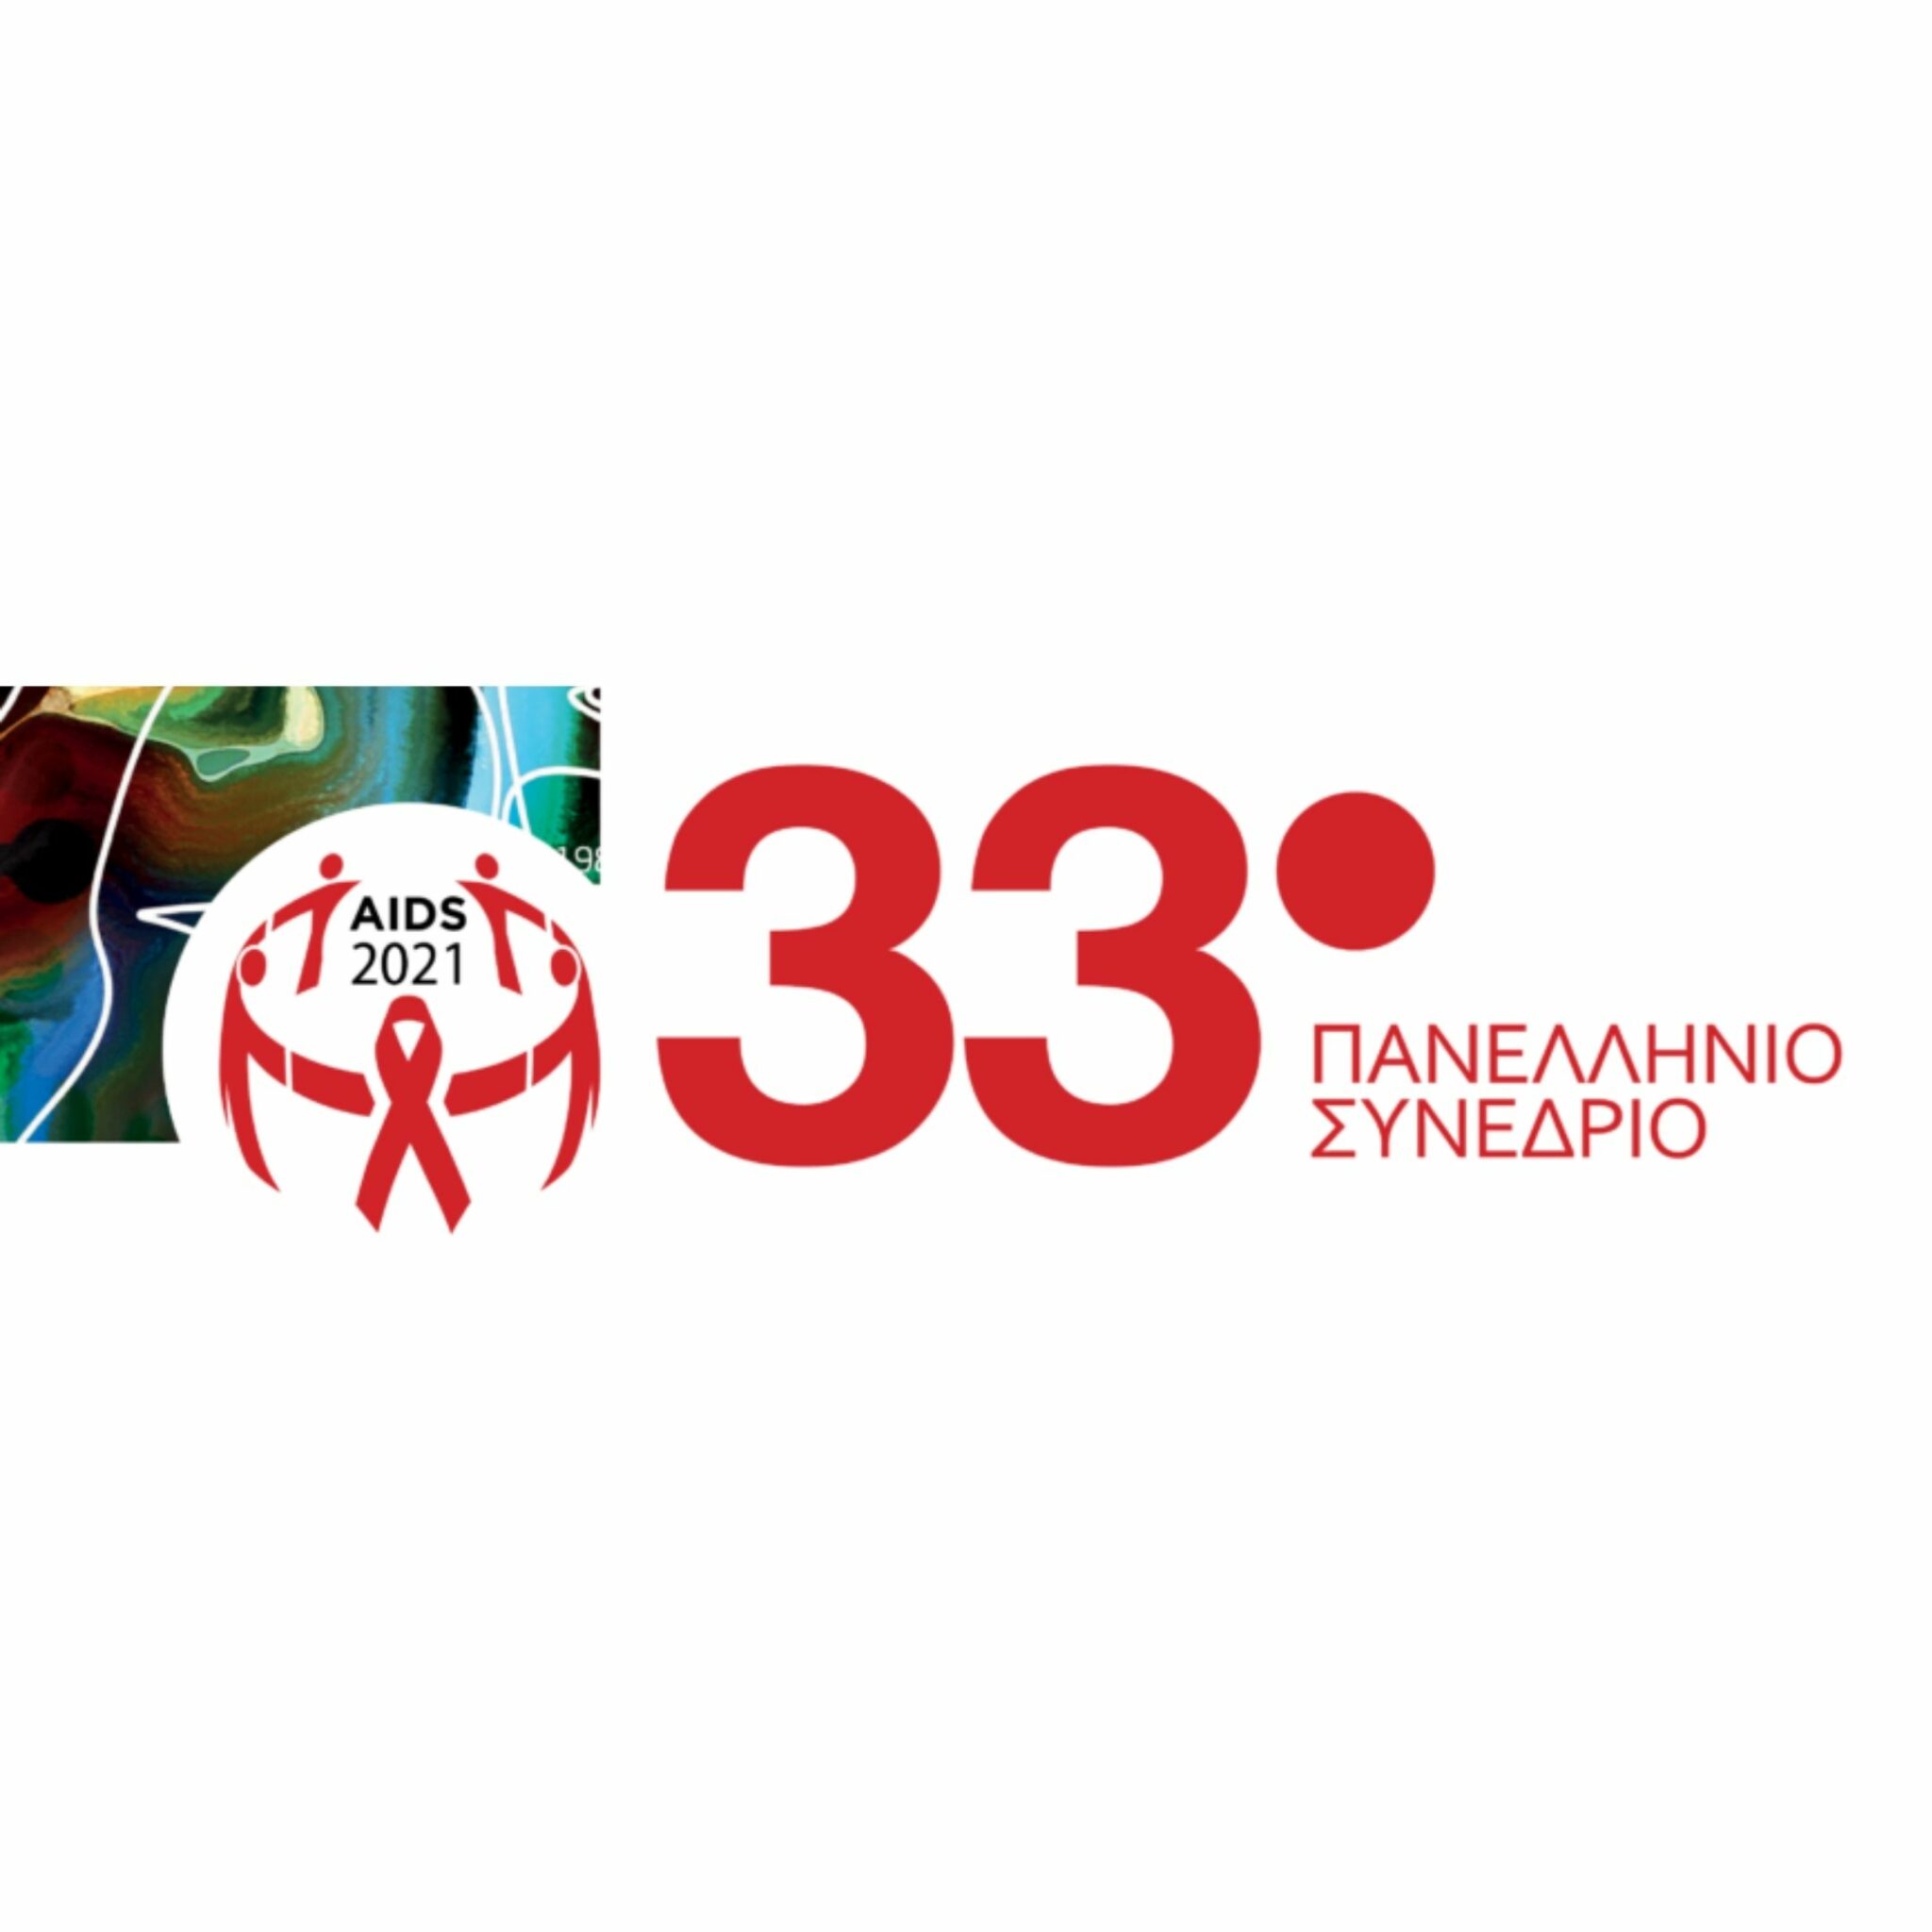 Εικόνα για το άρθρο “33ο Πανελλήνιο Συνέδριο AIDS 25-27/11/2021”